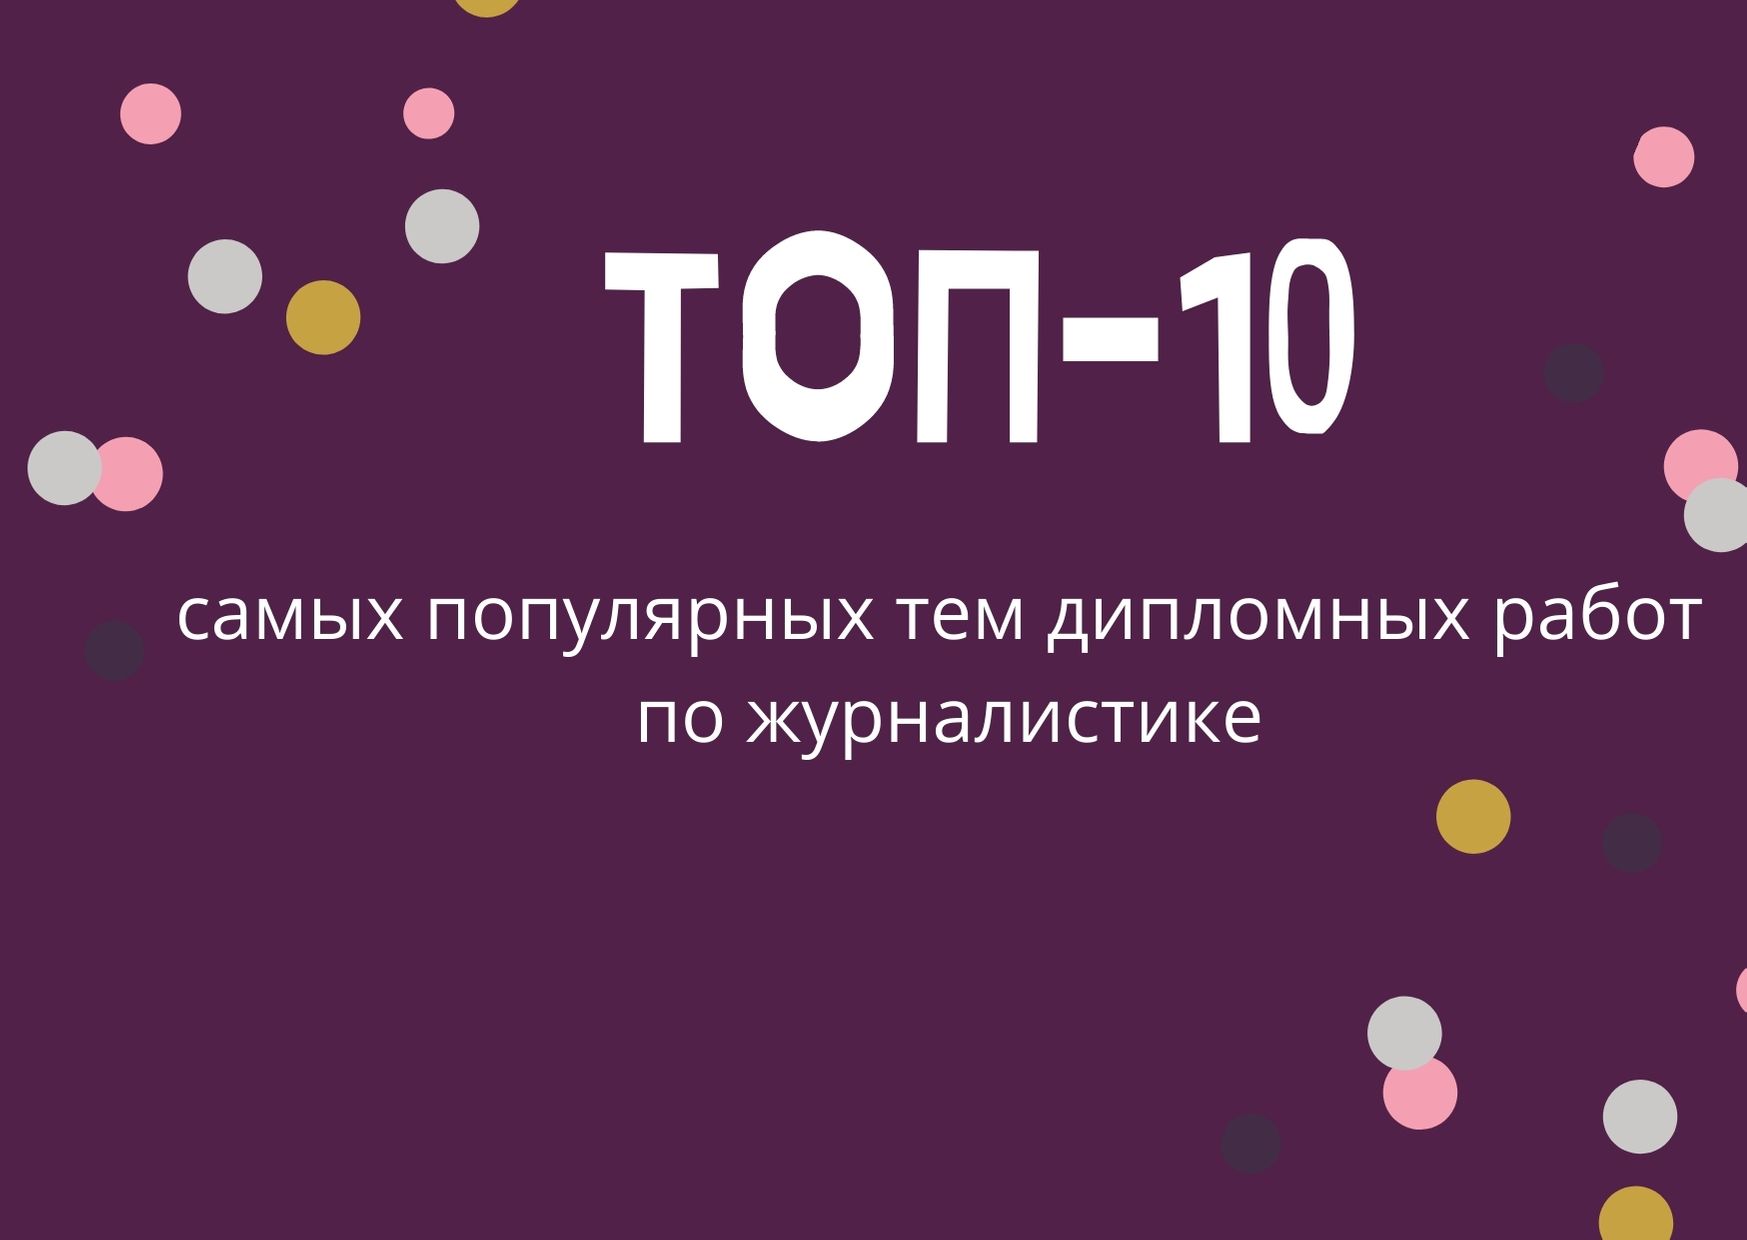 ТОП-10 самых популярных тем дипломных работ по журналистике